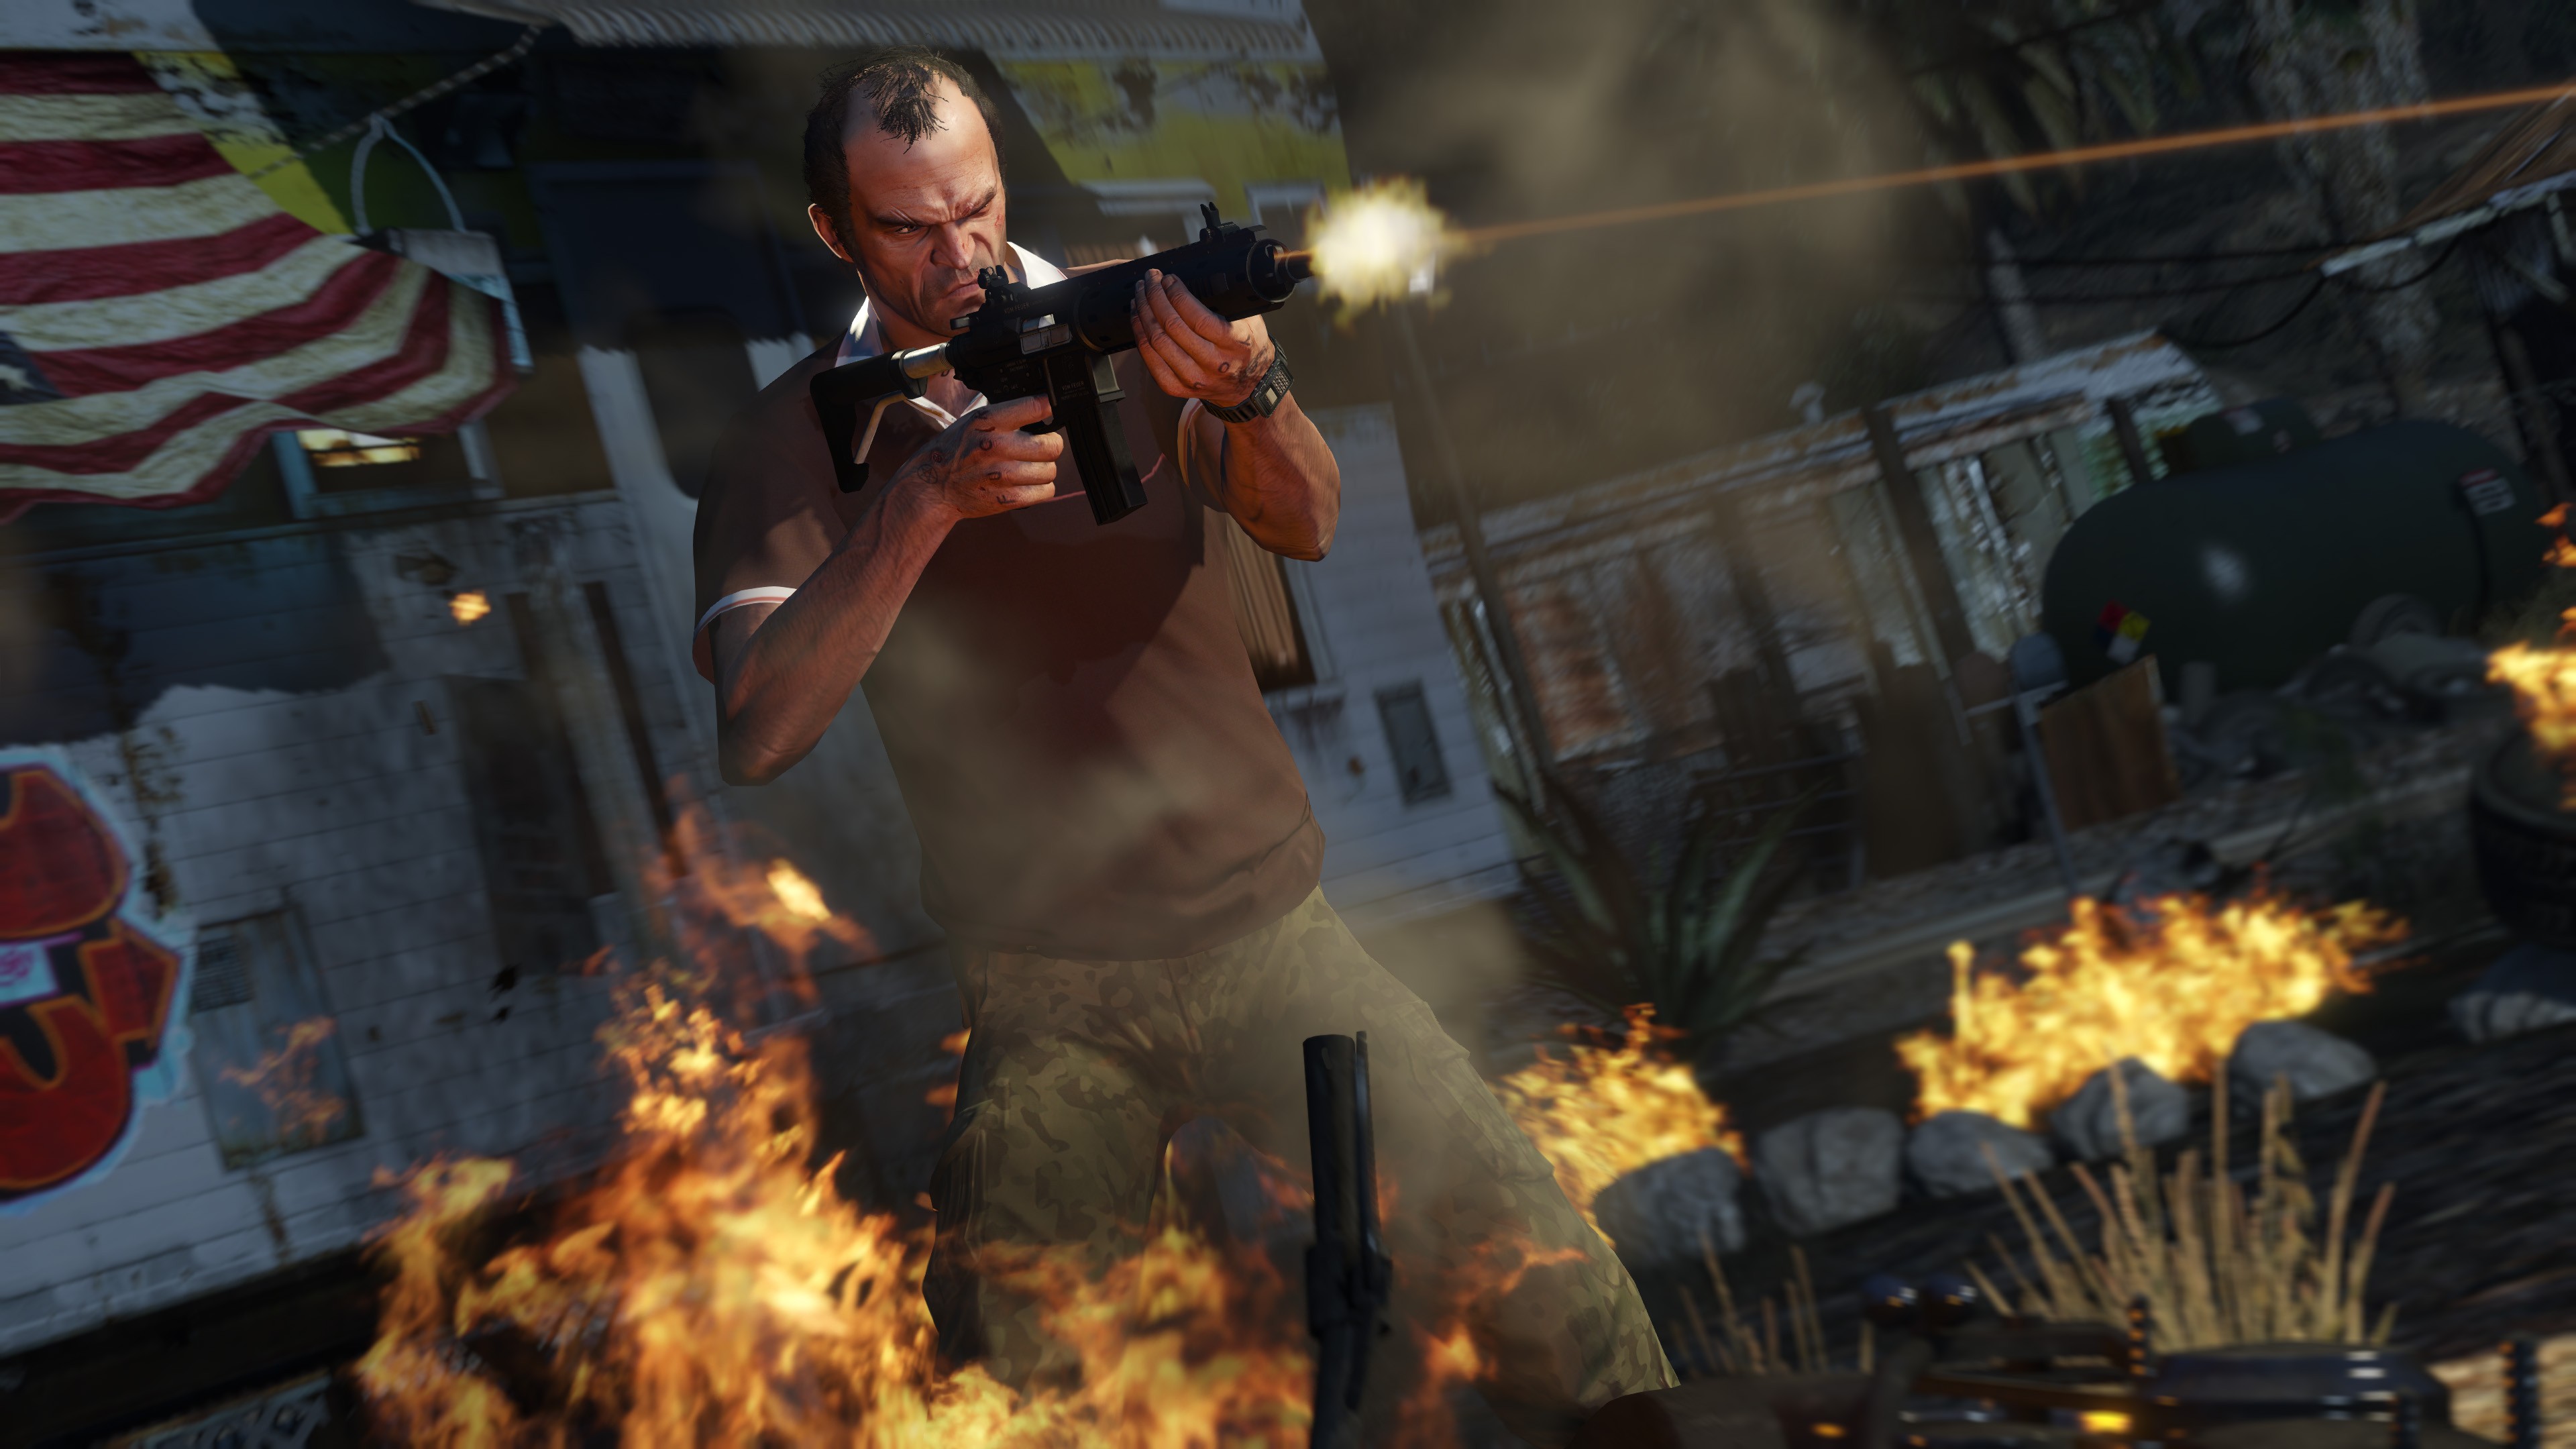 GTA RP  Rockstar Games Impõe Restrições aos Servidores FiveM